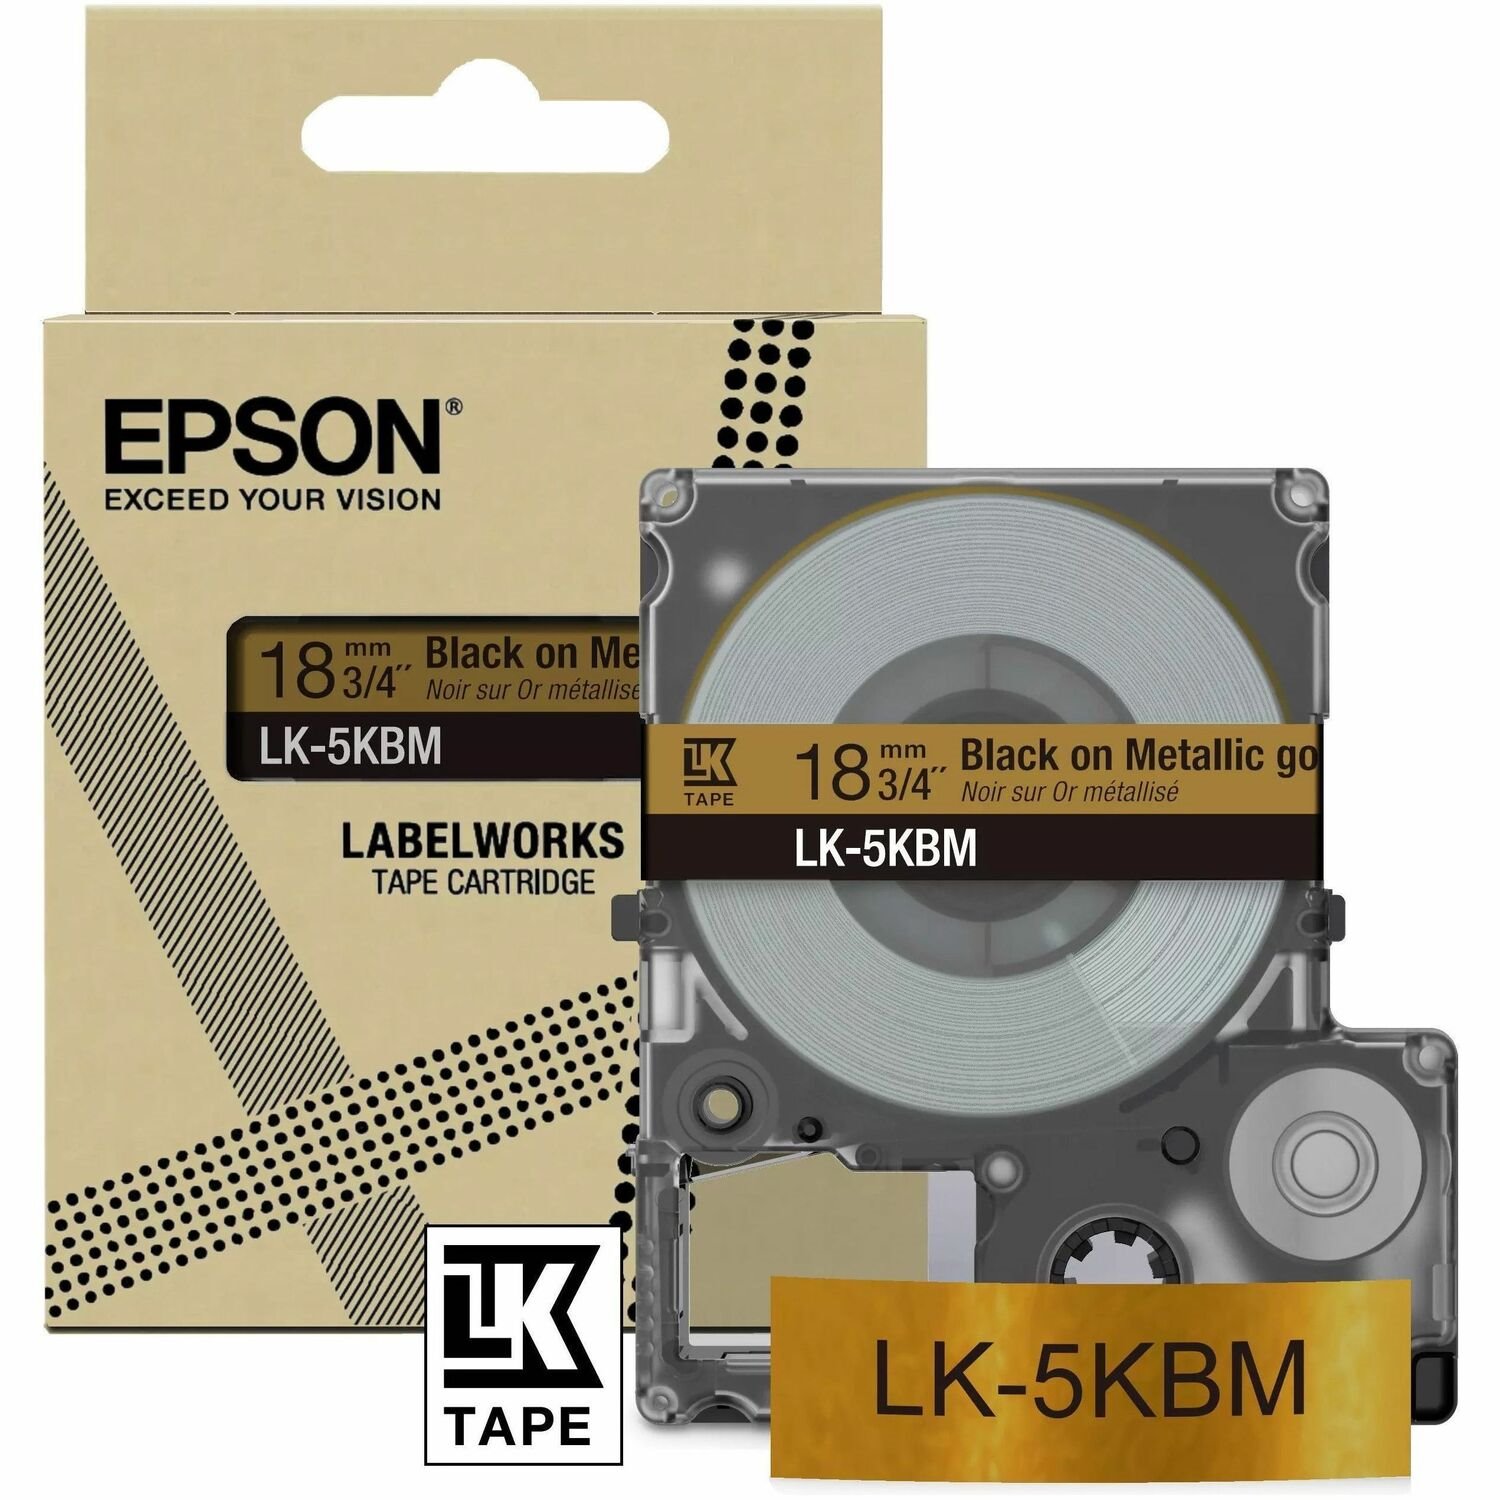 Epson LK-5KBM Label Tape